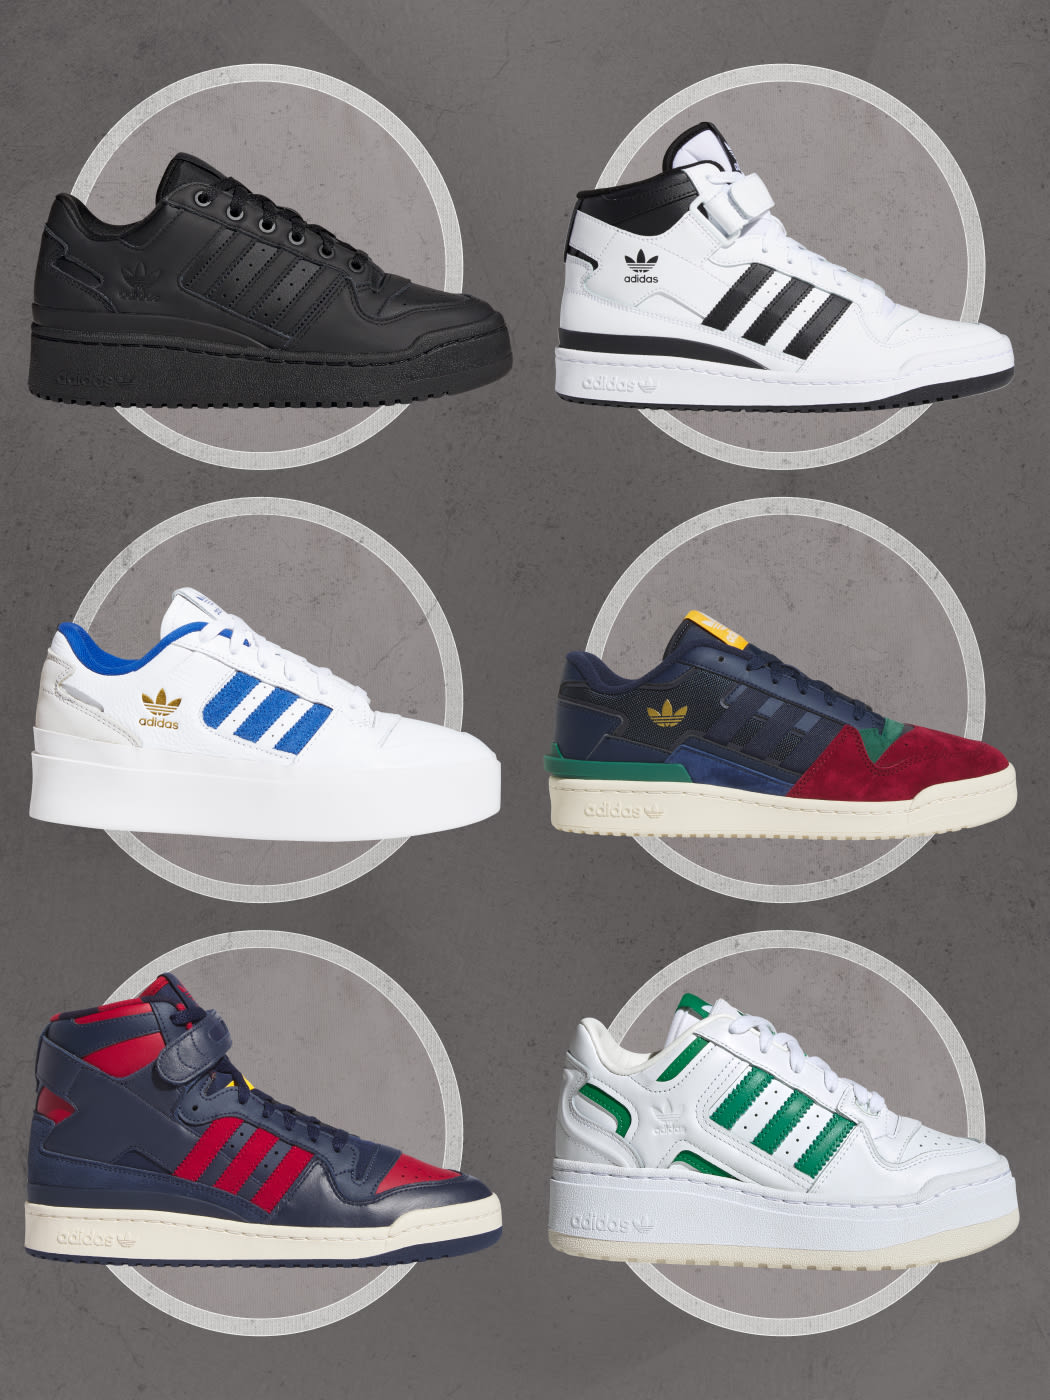 Adidas Forum 84 Low Orbit Grey : r/Sneakers